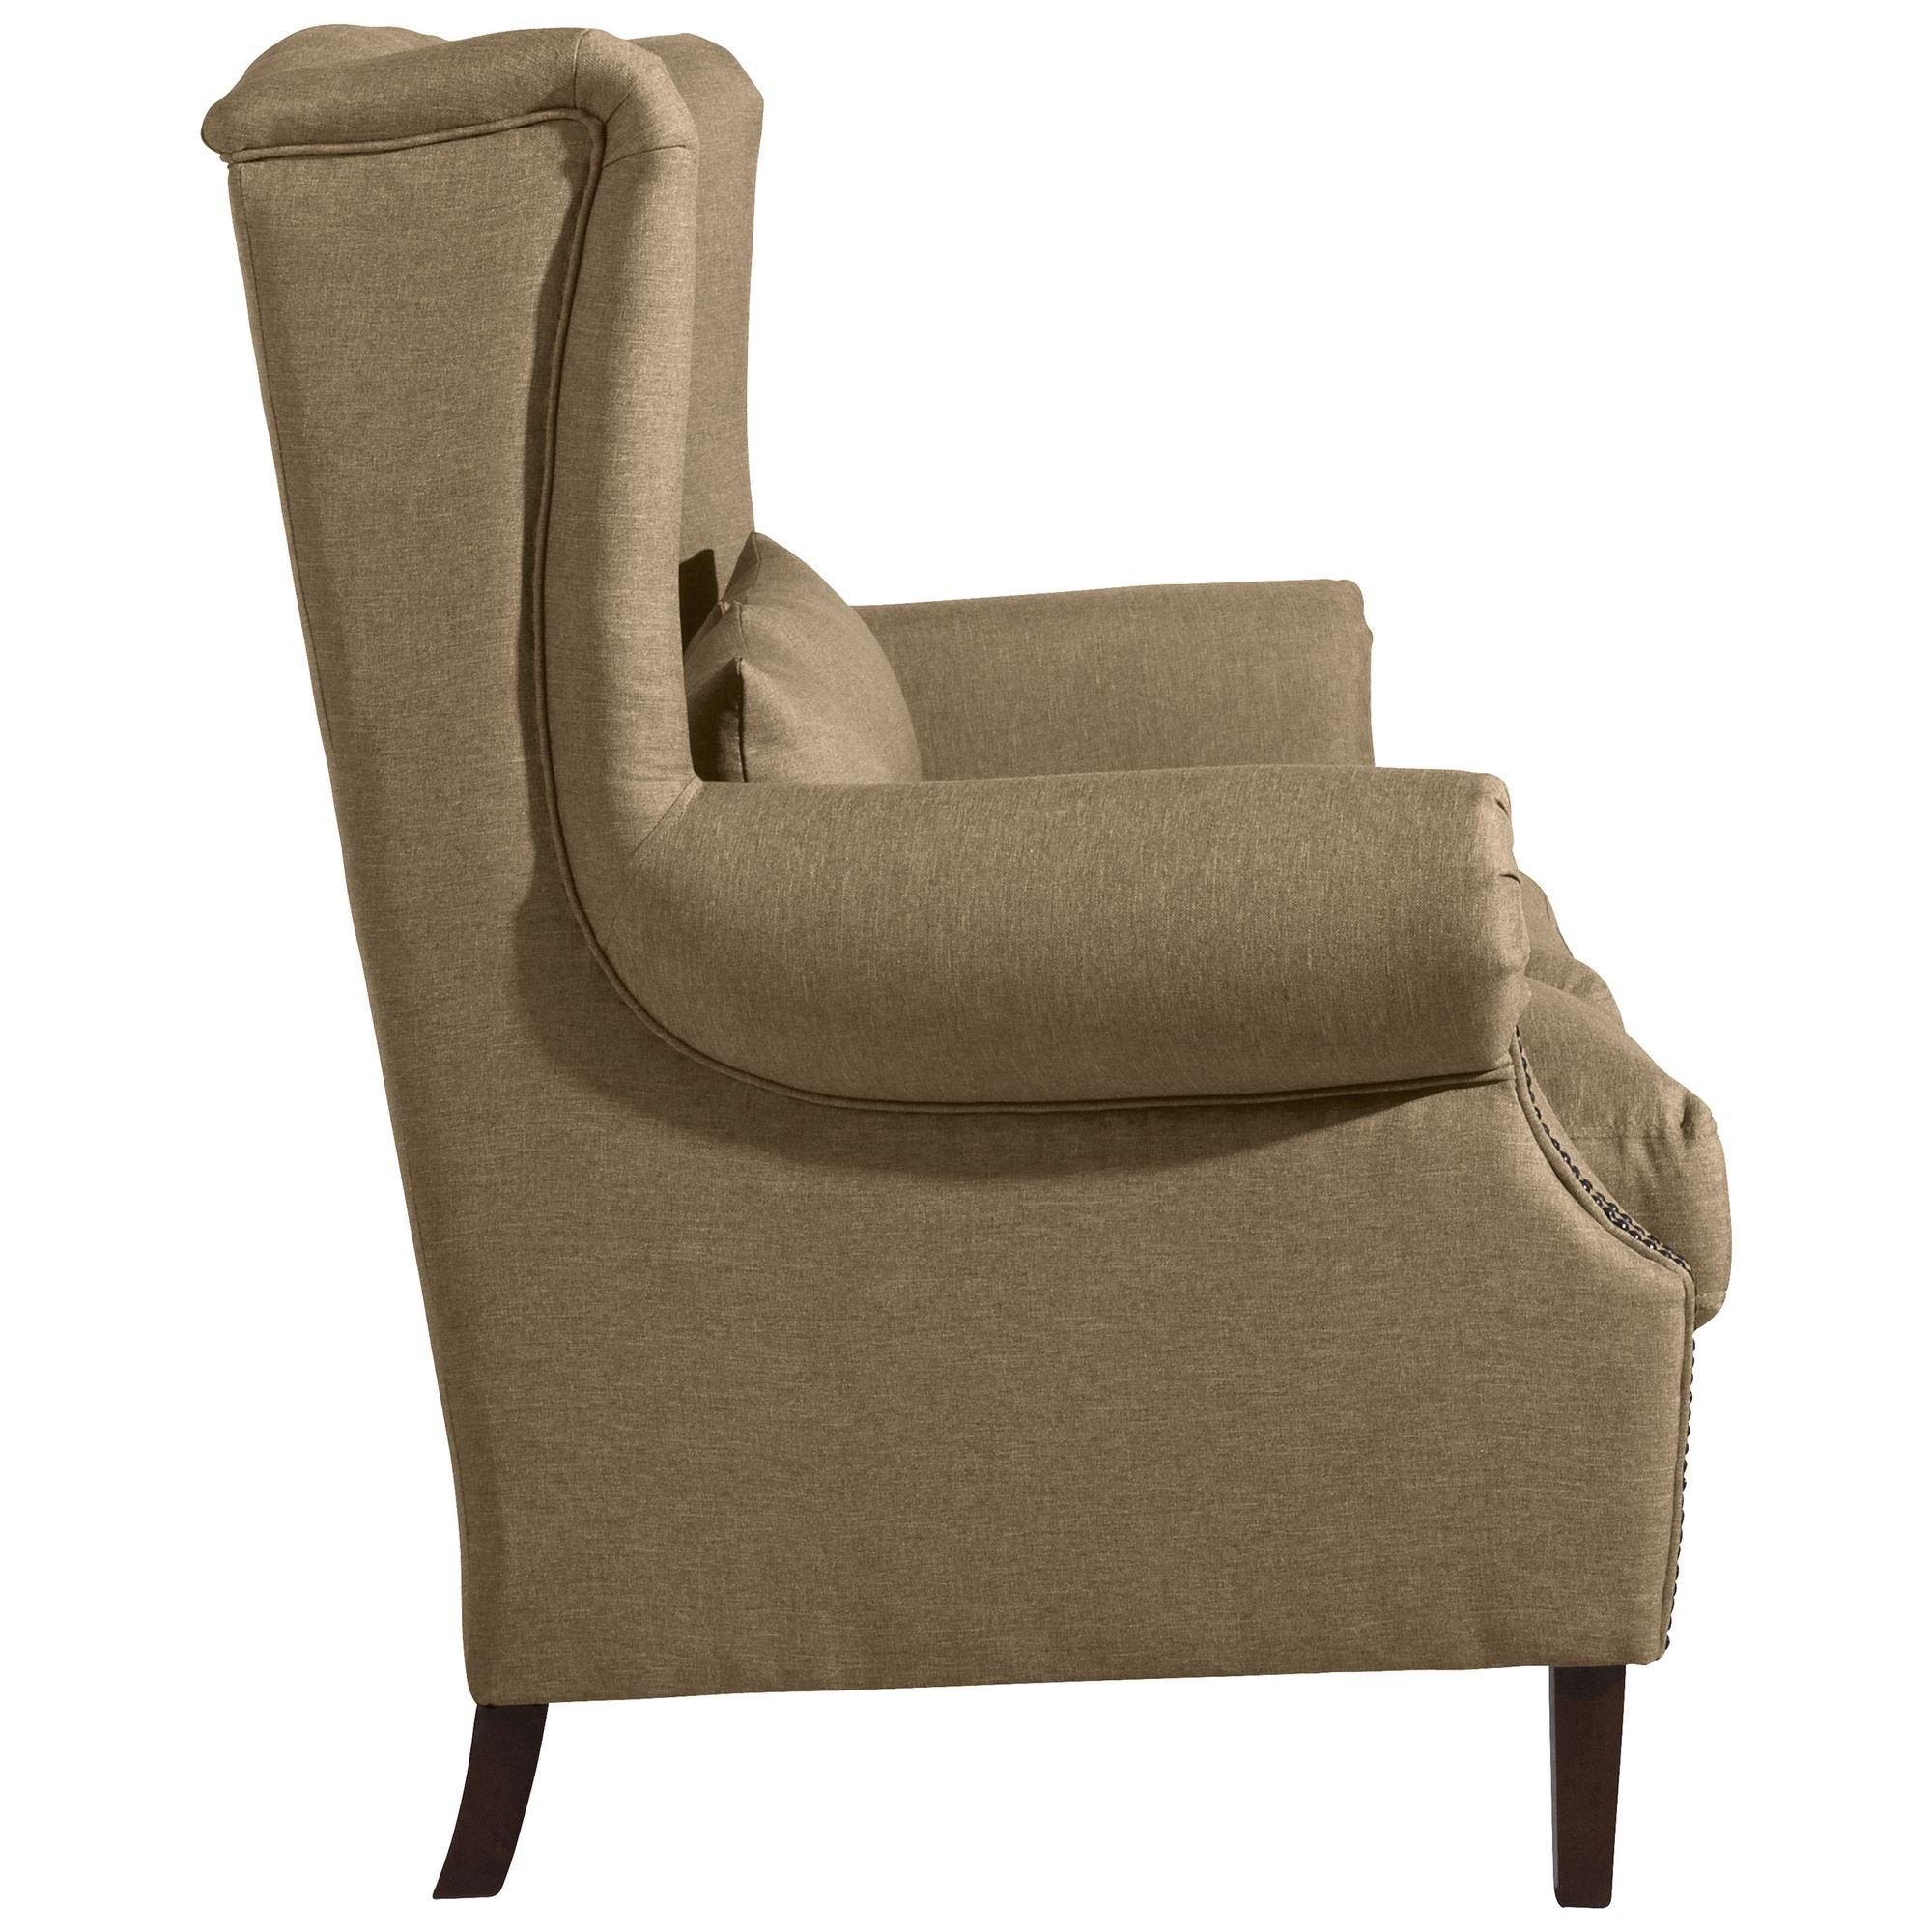 aufm Teile, Kandy Buche Flachgewebe Sofa Sofa 58 Versand inkl. 1 Sparpreis nussba, Sitz hochwertig Kostenlosem Kessel verarbeitet,bequemer 2-Sitzer Bezug